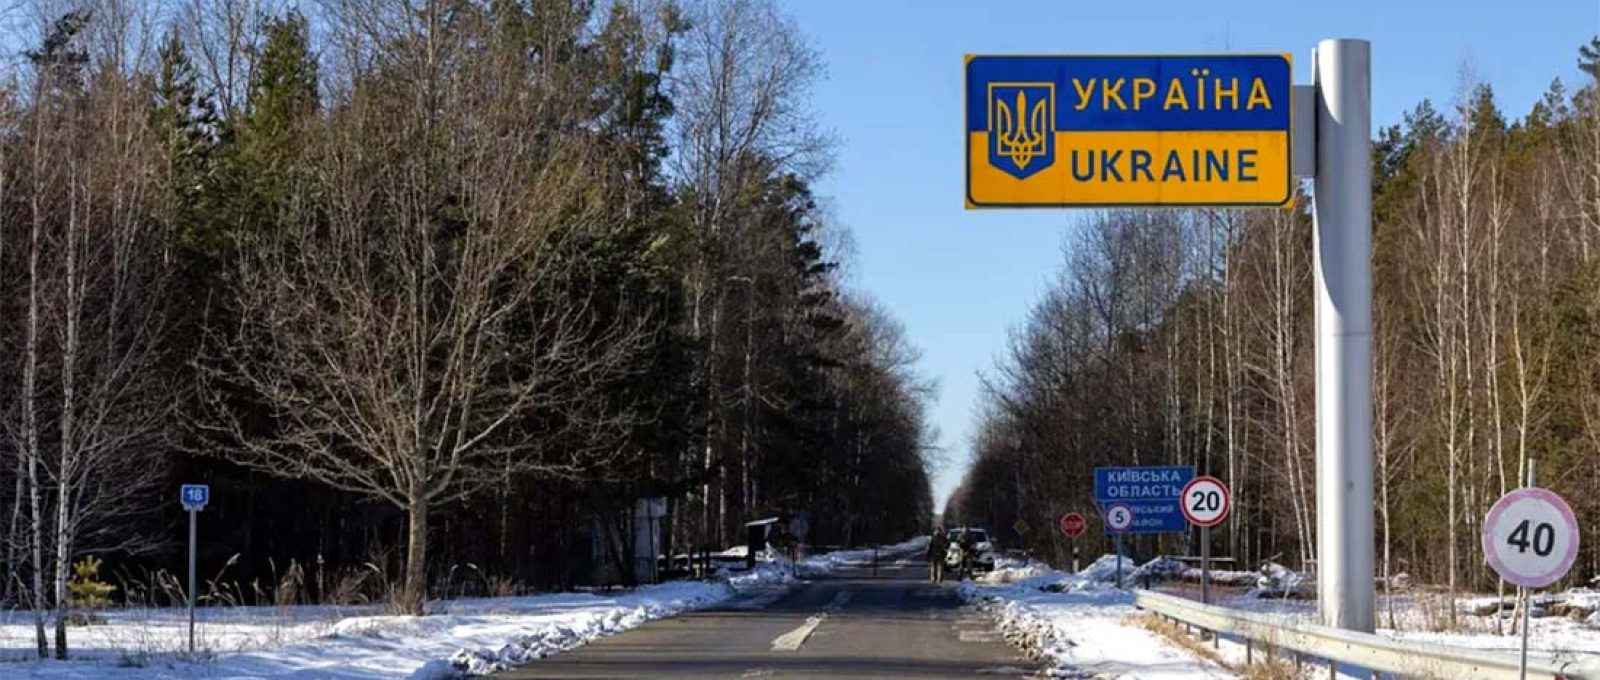 Fronteira Ucrânia-Bielorrússia na cidade de Vicha, Ucrânia (Chris McGrath/Getty Images).